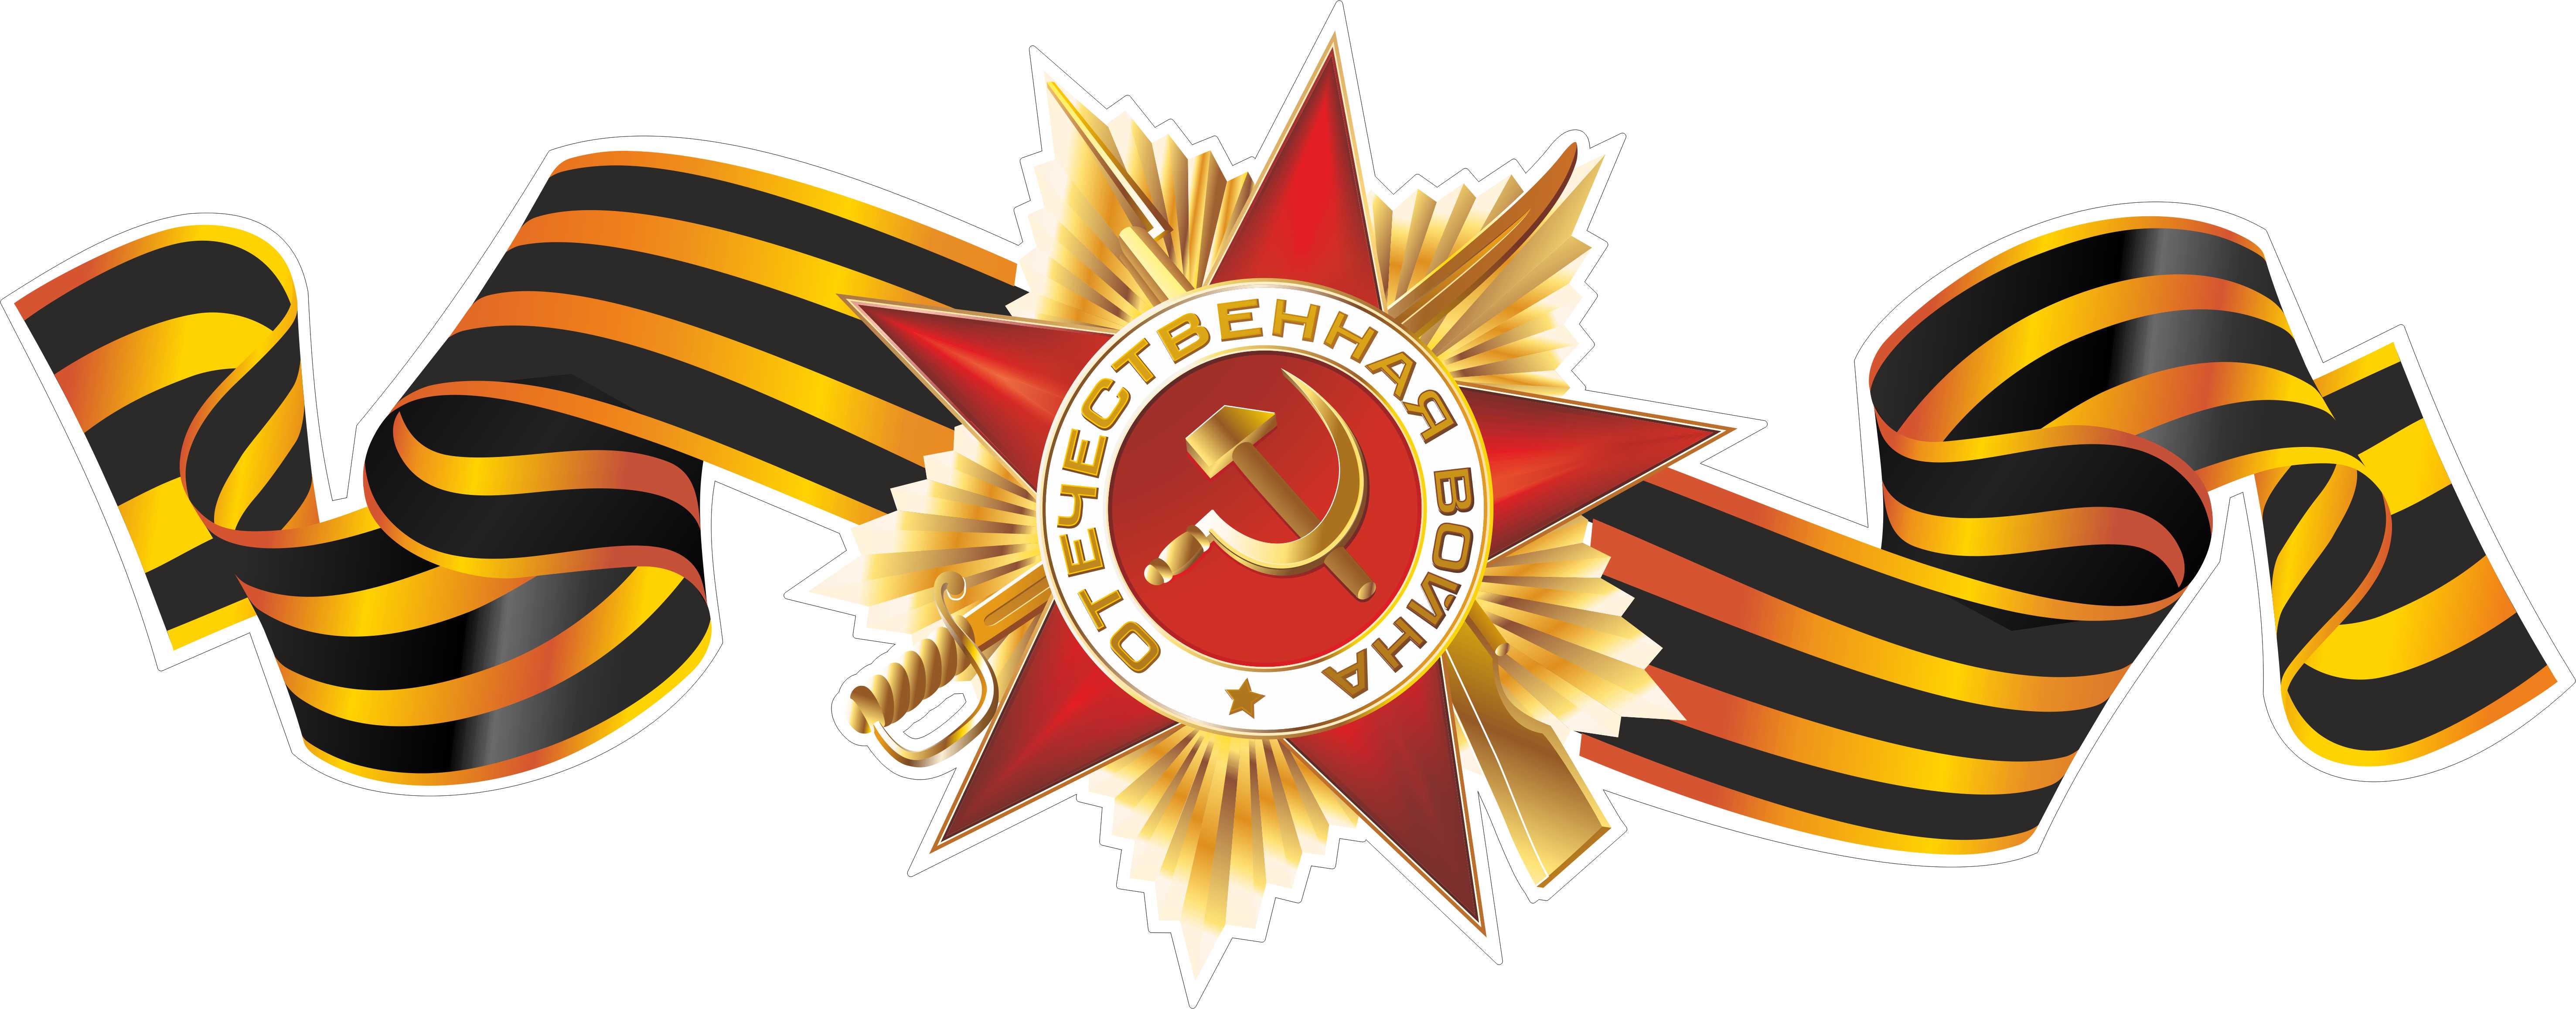 Георгиевская лента и Орден Победы